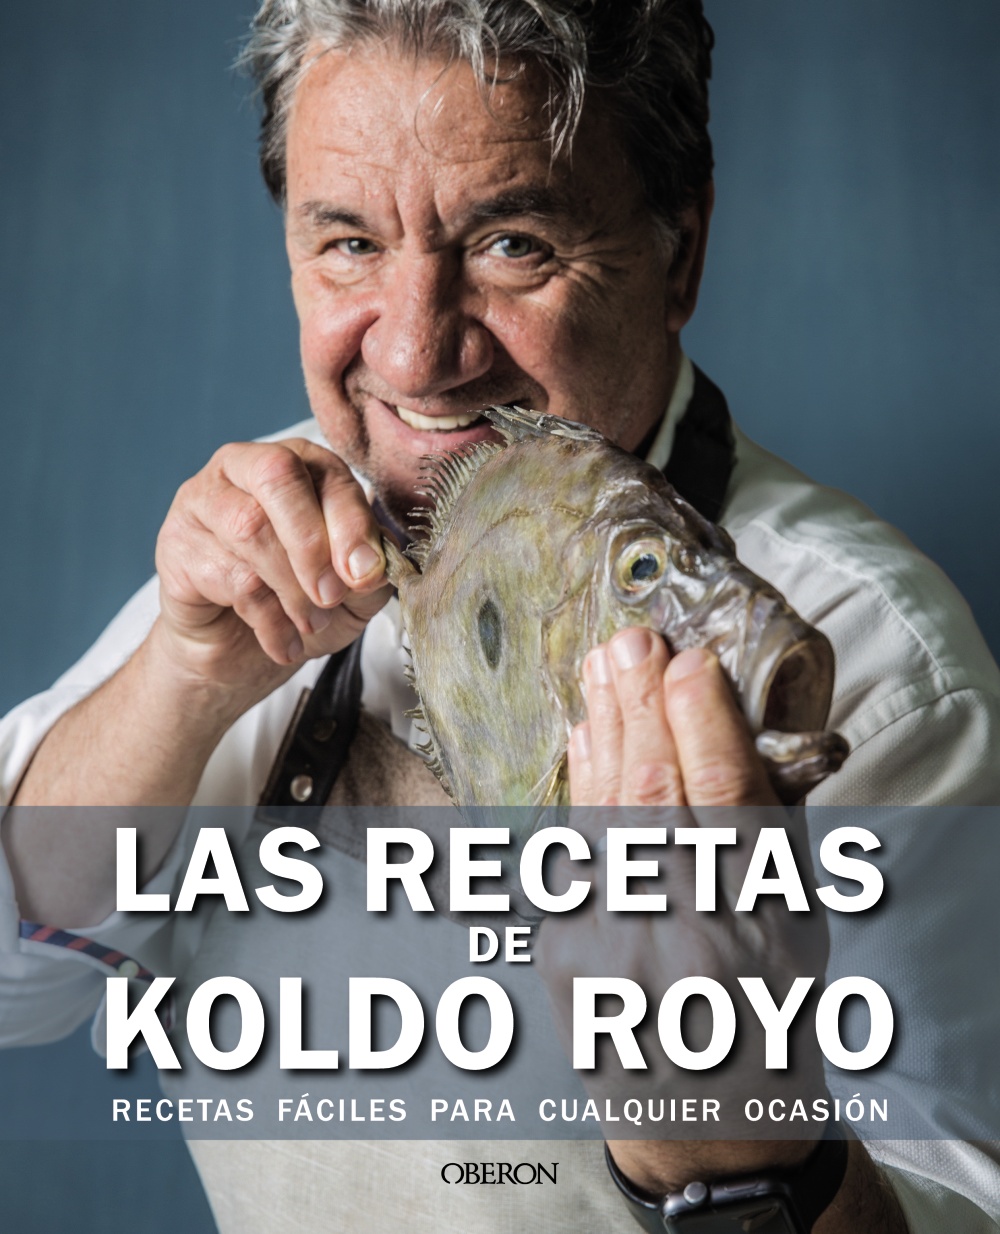 las-recetas-de-koldo-royo-978-84-415-4590-8.jpg